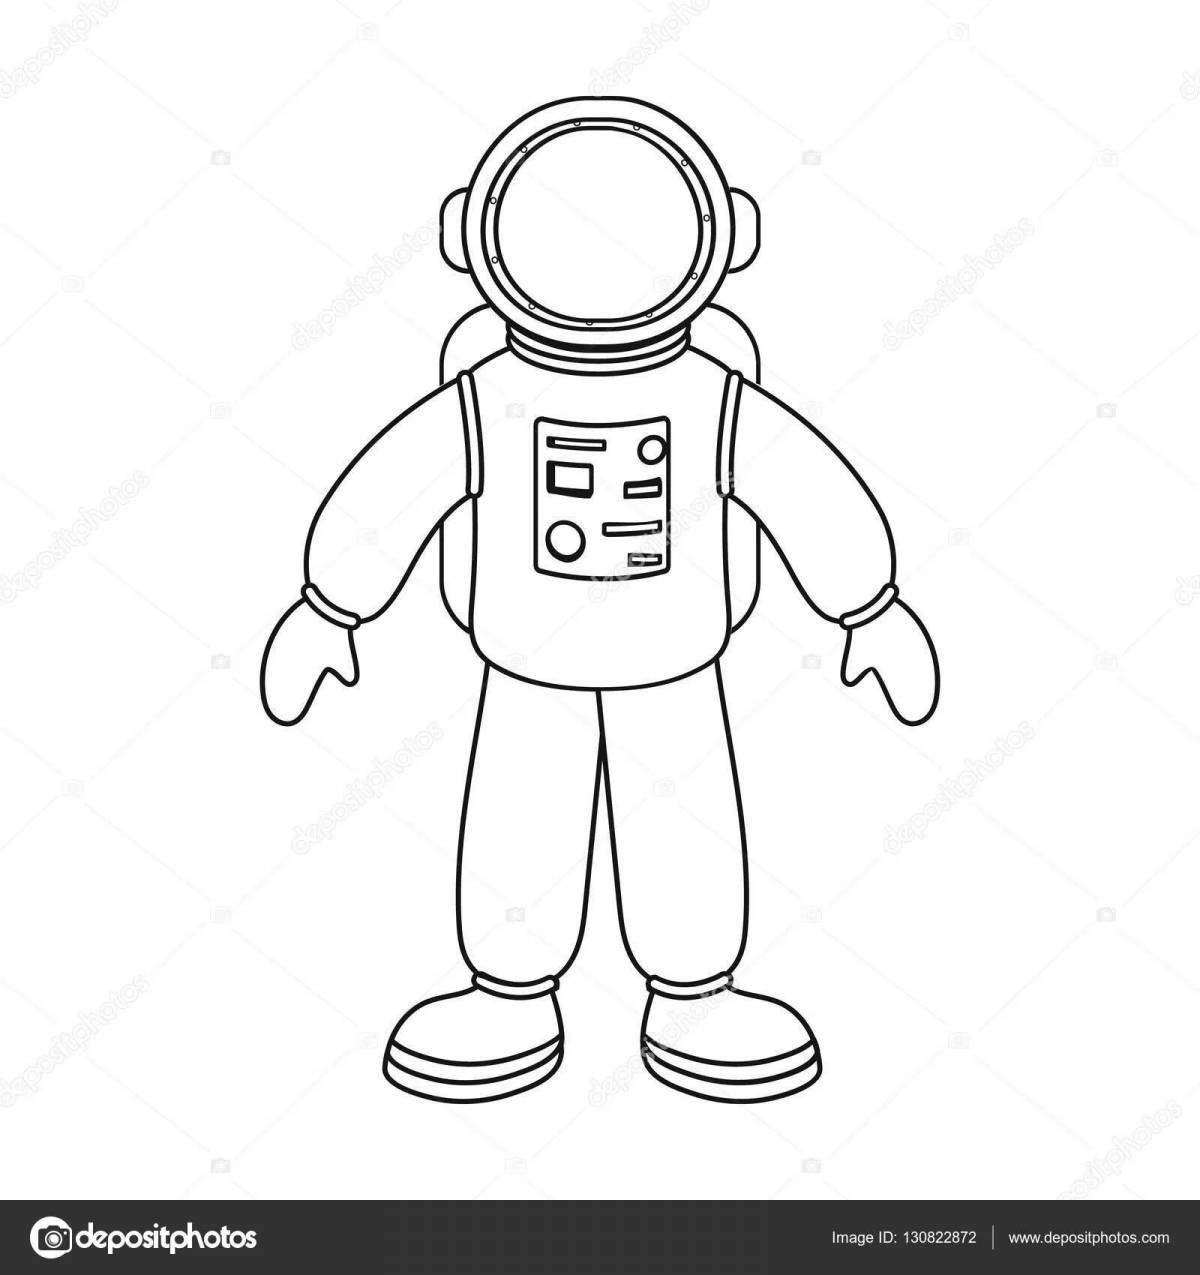 Impressive spacesuit astronaut